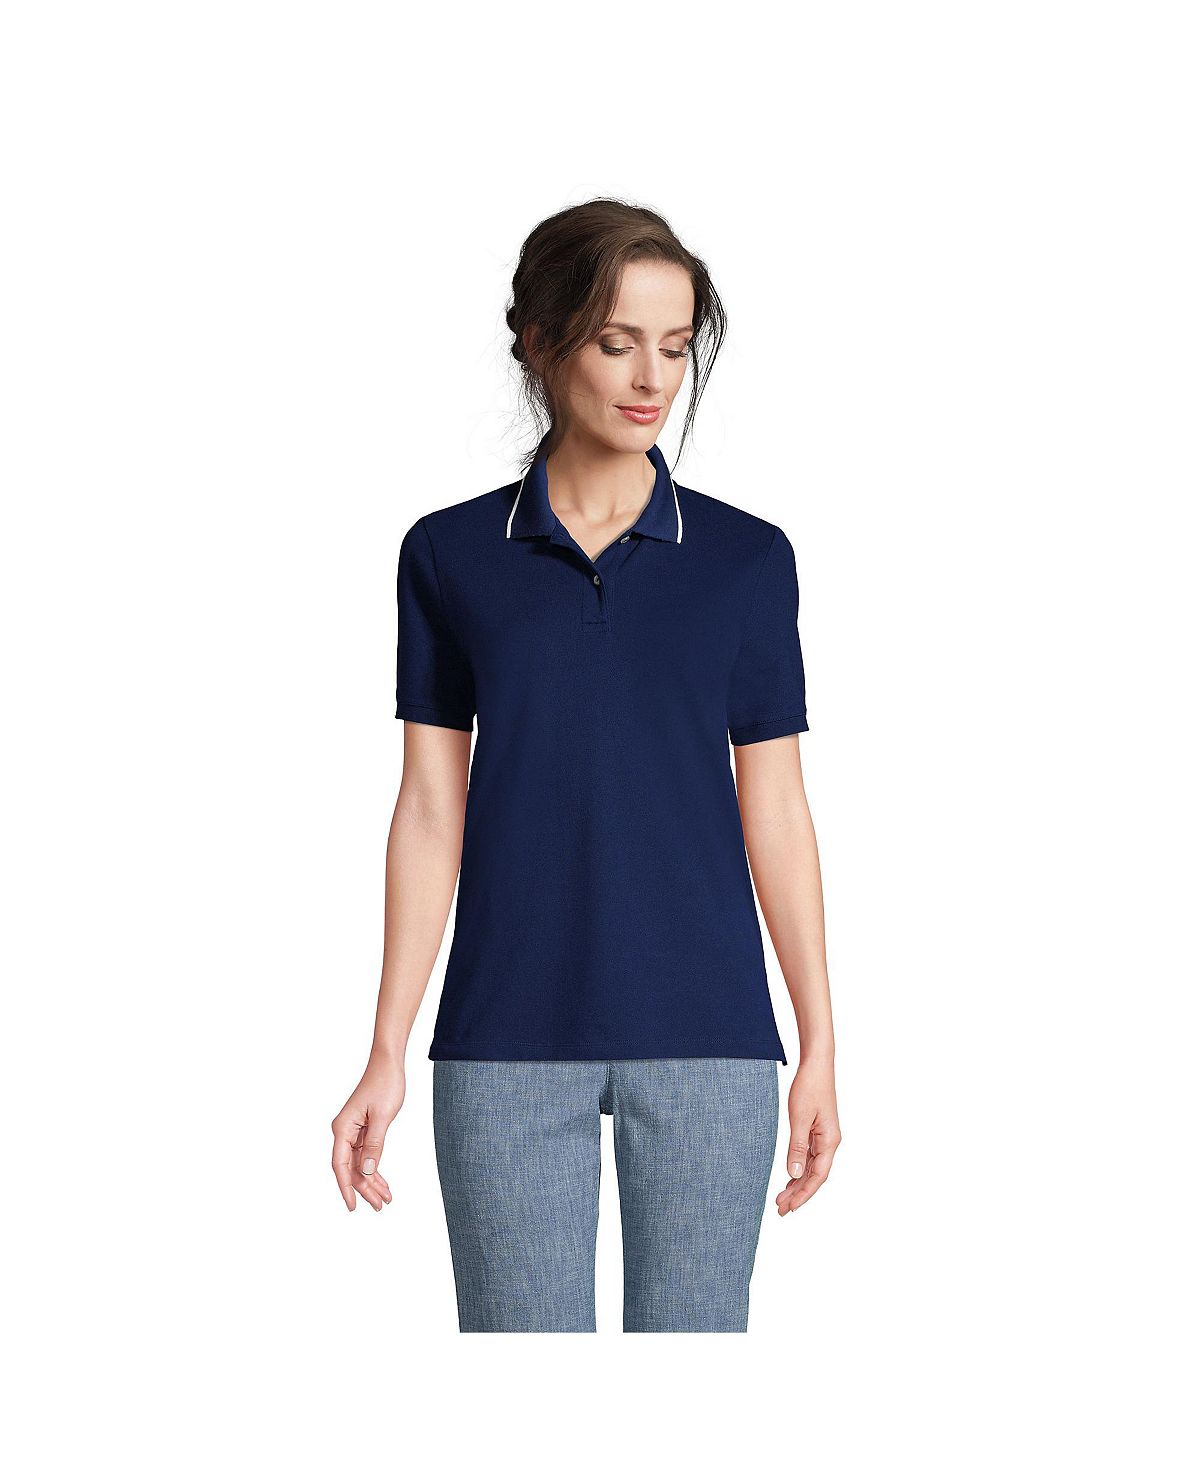 Женская рубашка-поло из сетчатого хлопка с короткими рукавами Lands' End женская рубашка поло из сетчатого хлопка с короткими рукавами lands end